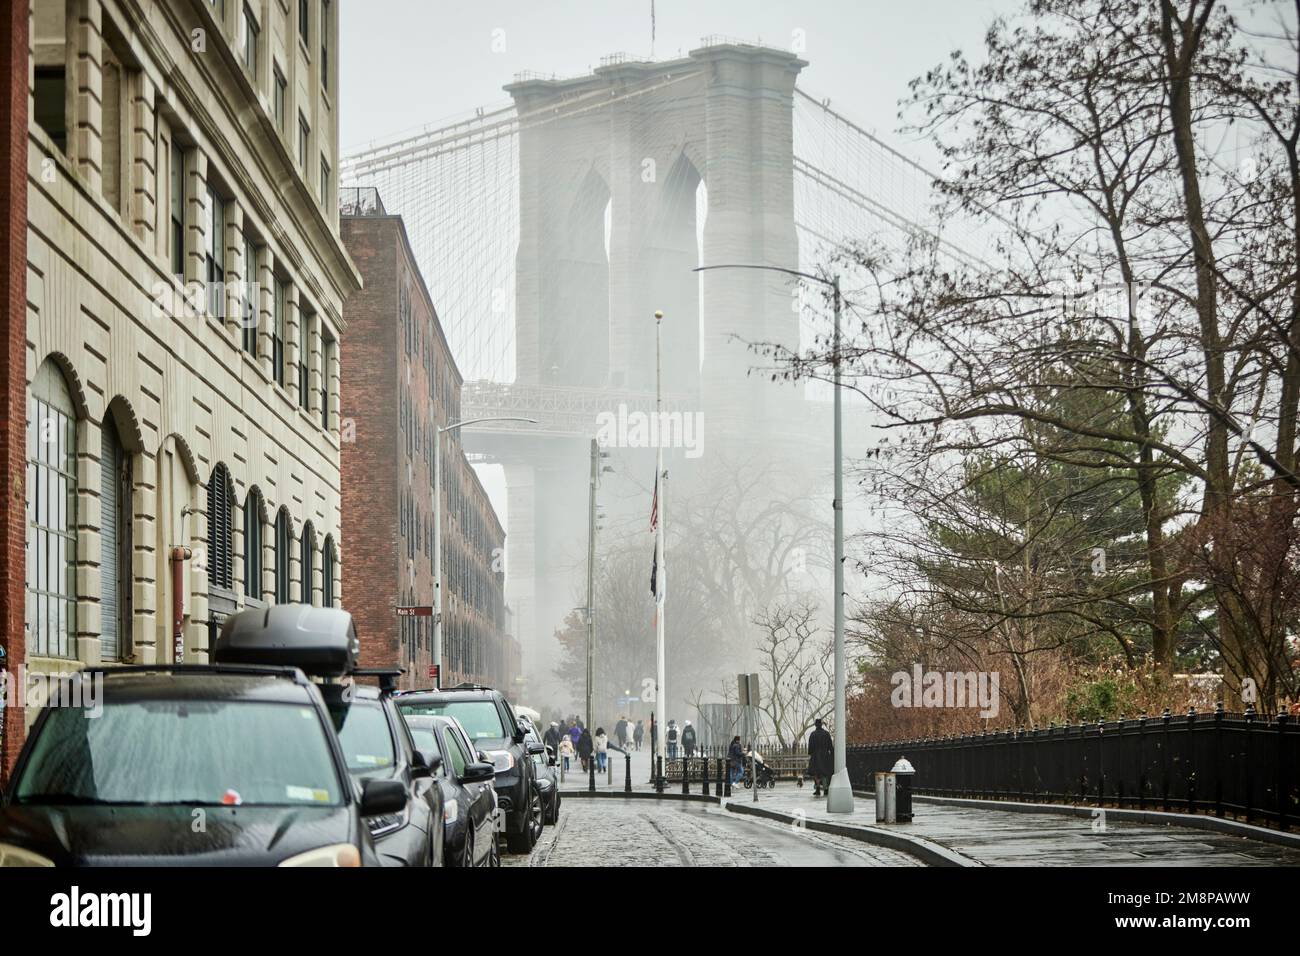 La ciudad de Nueva York Brooklyn Dumbo área con el emblemático puente de Brooklyn Foto de stock